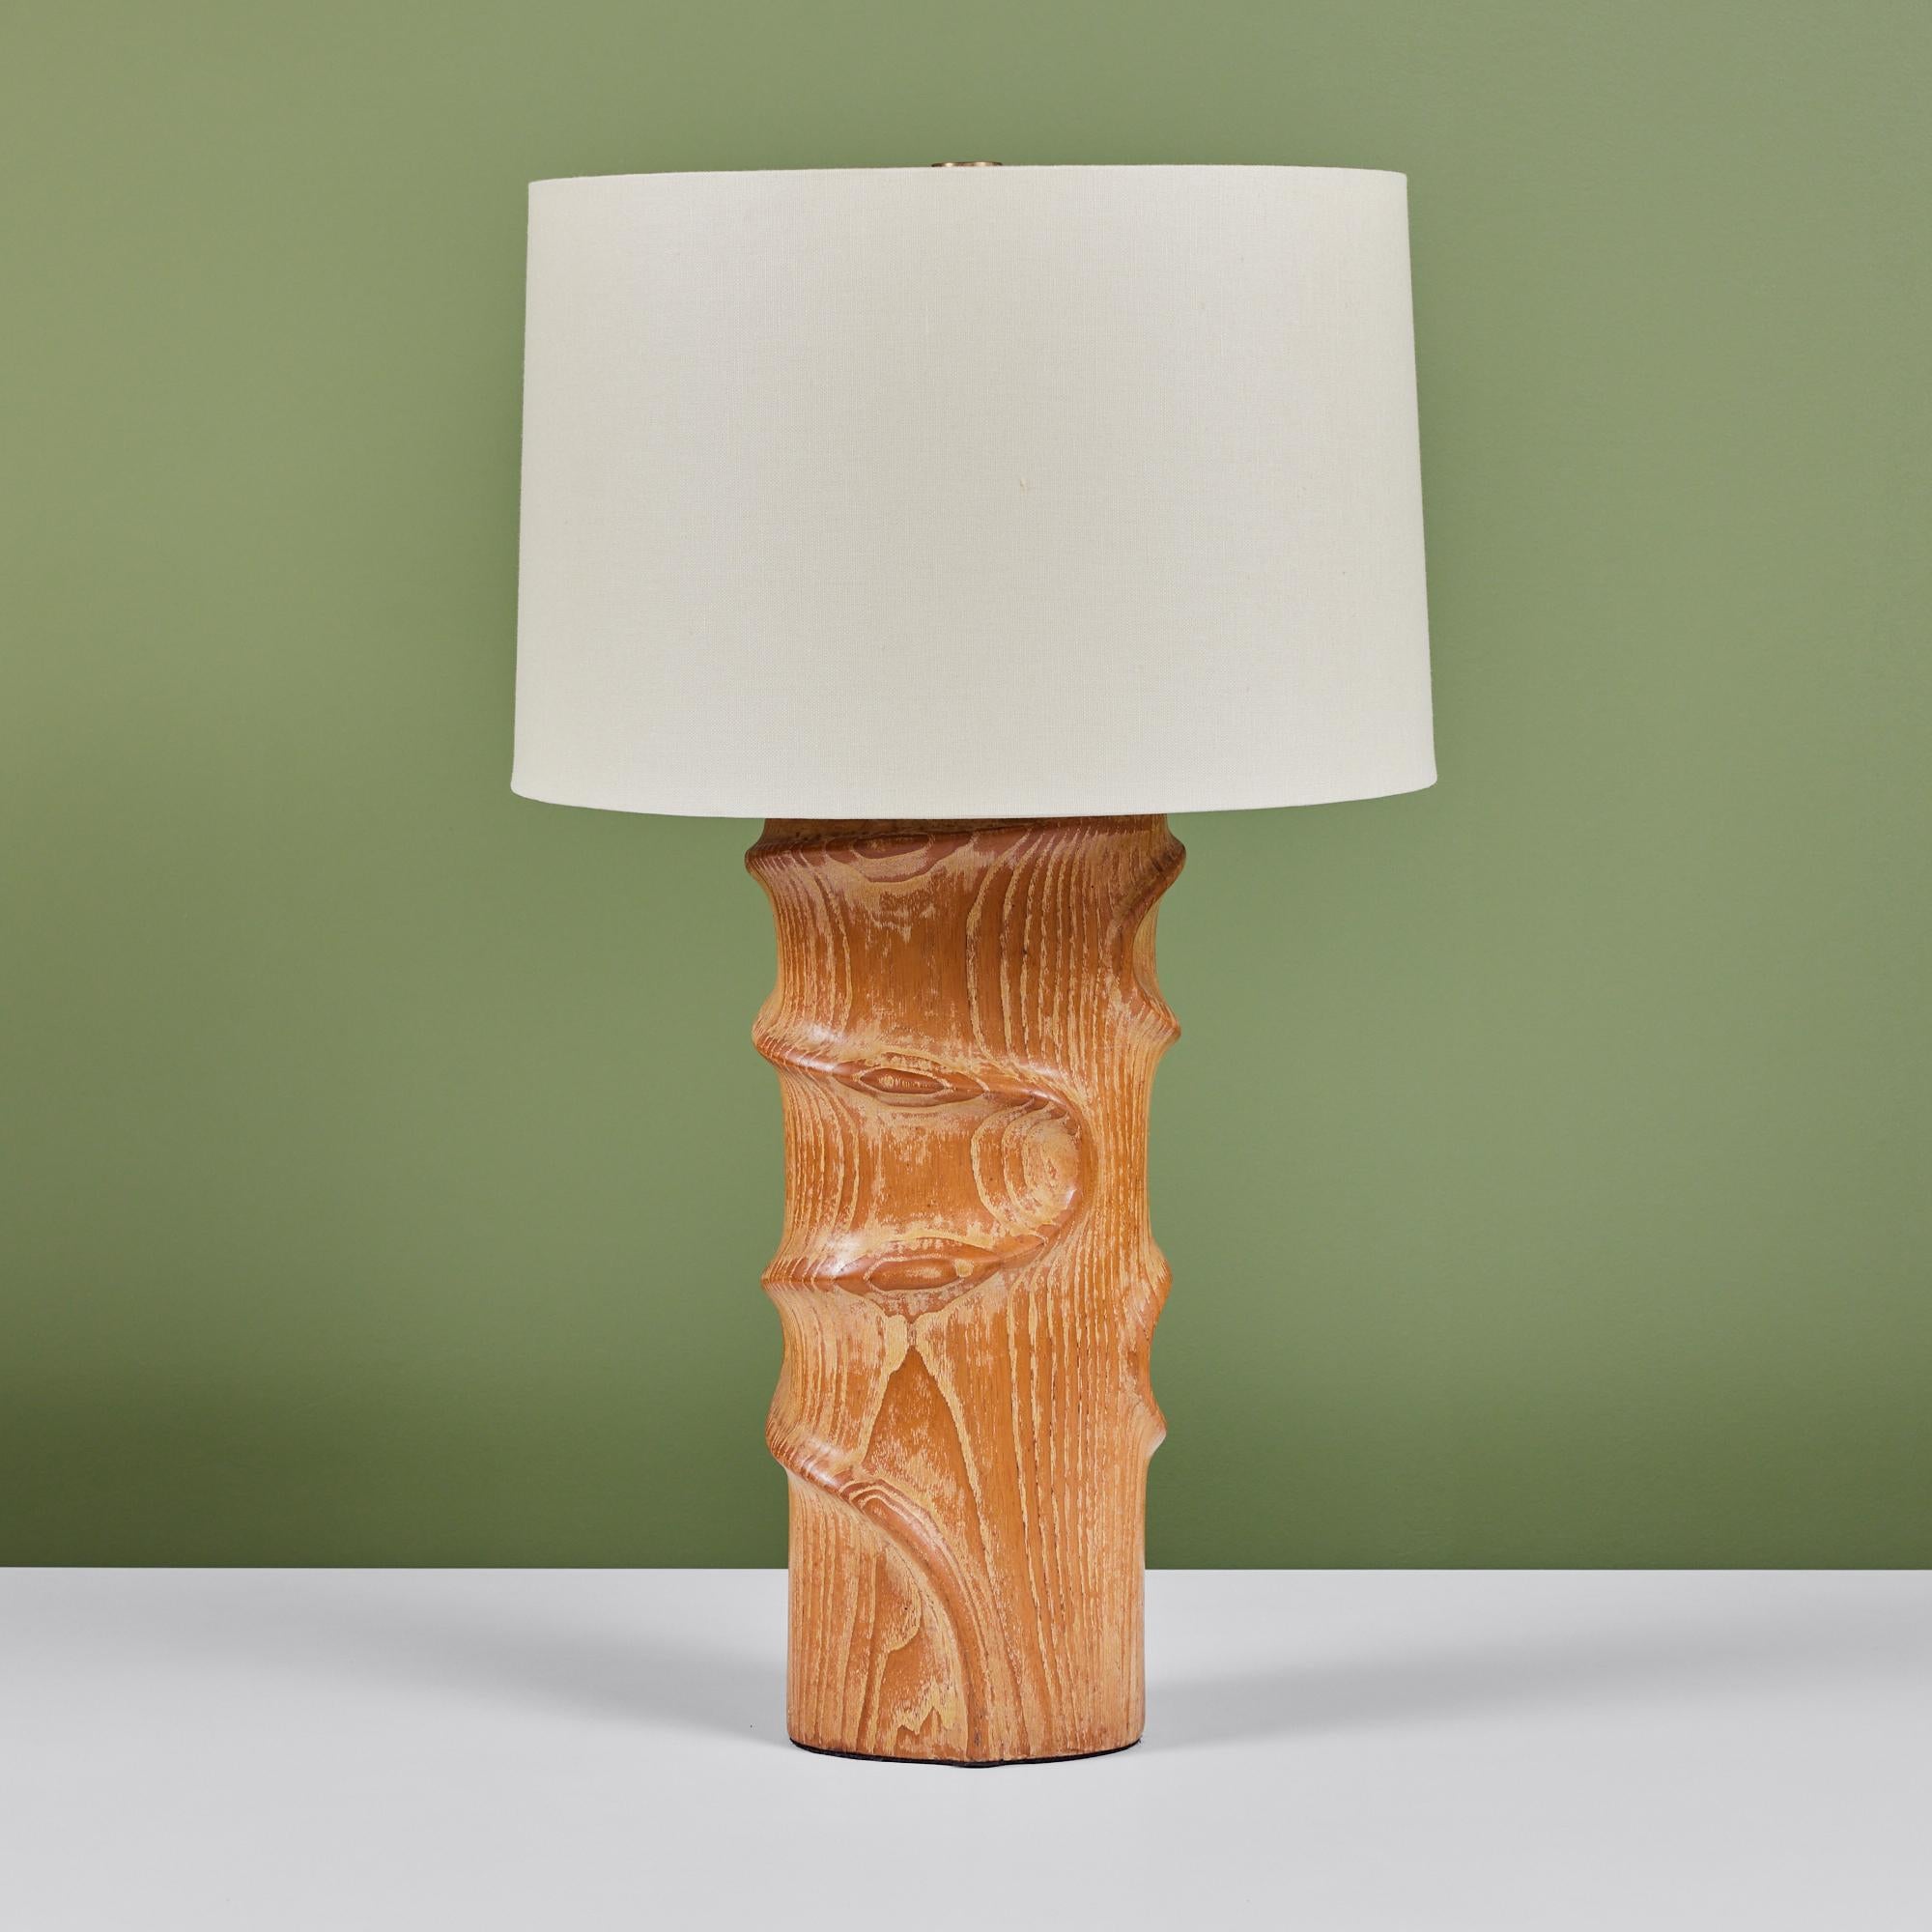 Lampe de table en chêne dans le style du designer du milieu du siècle, Yasha Heifetz. La lampe comporte une base en chêne sculptée à la main et un nouvel abat-jour en lin blanc qui se fixe au sommet de sa harpe en laiton. Le câblage de la lampe a